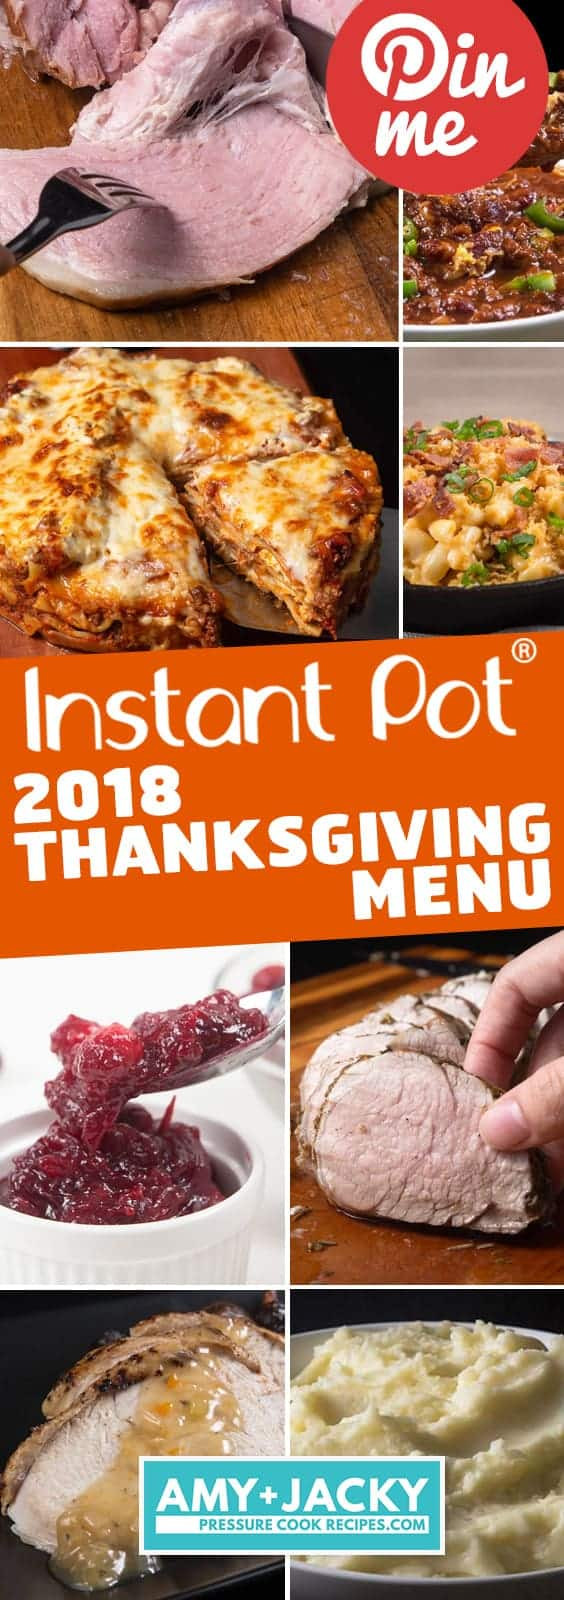 Instant Pot Thanksgiving Recipes
 50 Instant Pot Thanksgiving Recipes